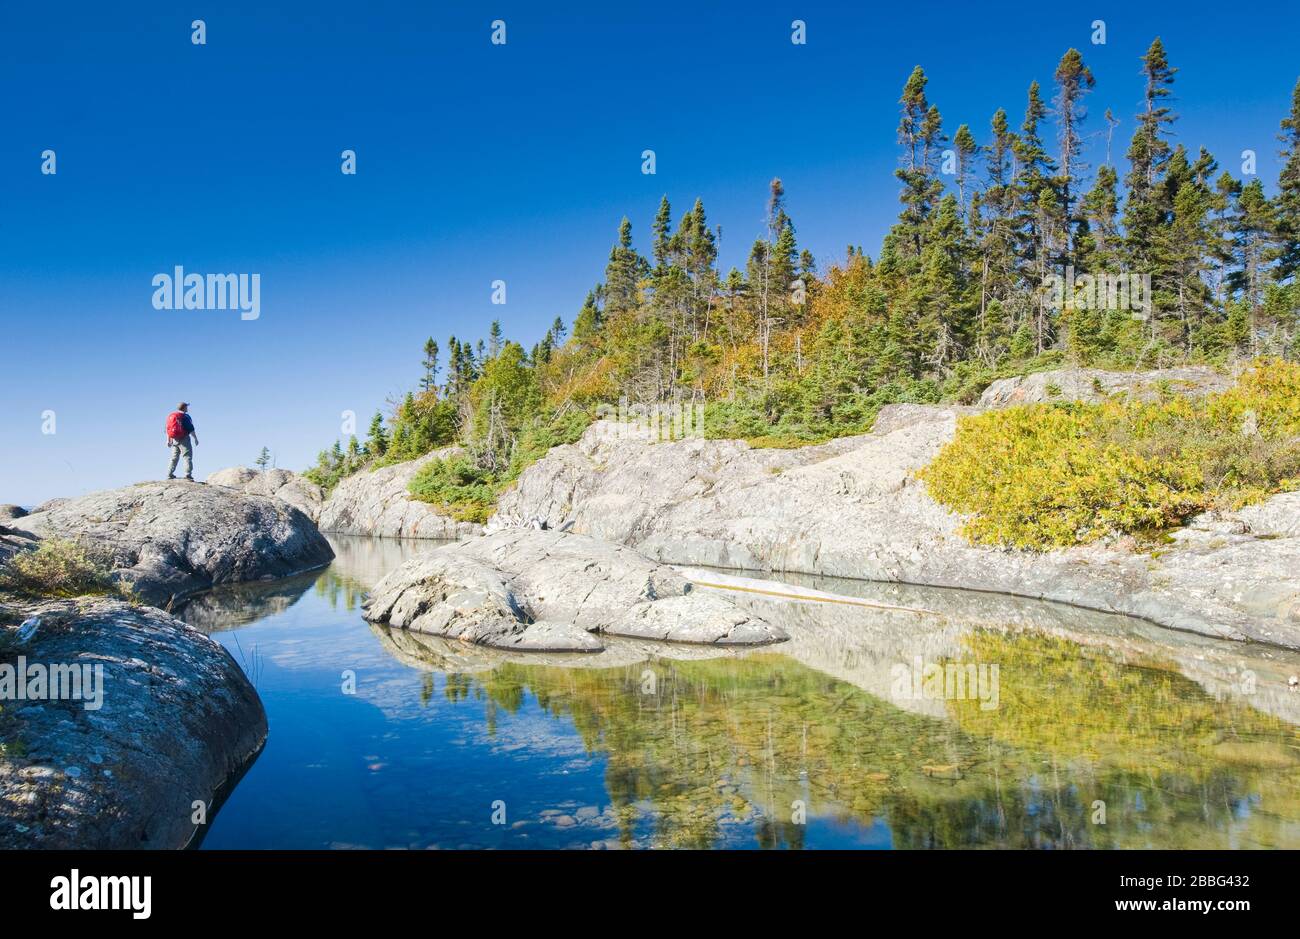 hiking along shoreline, Pukaskwa National Park, Lake Superior, Ontario, Canada Stock Photo